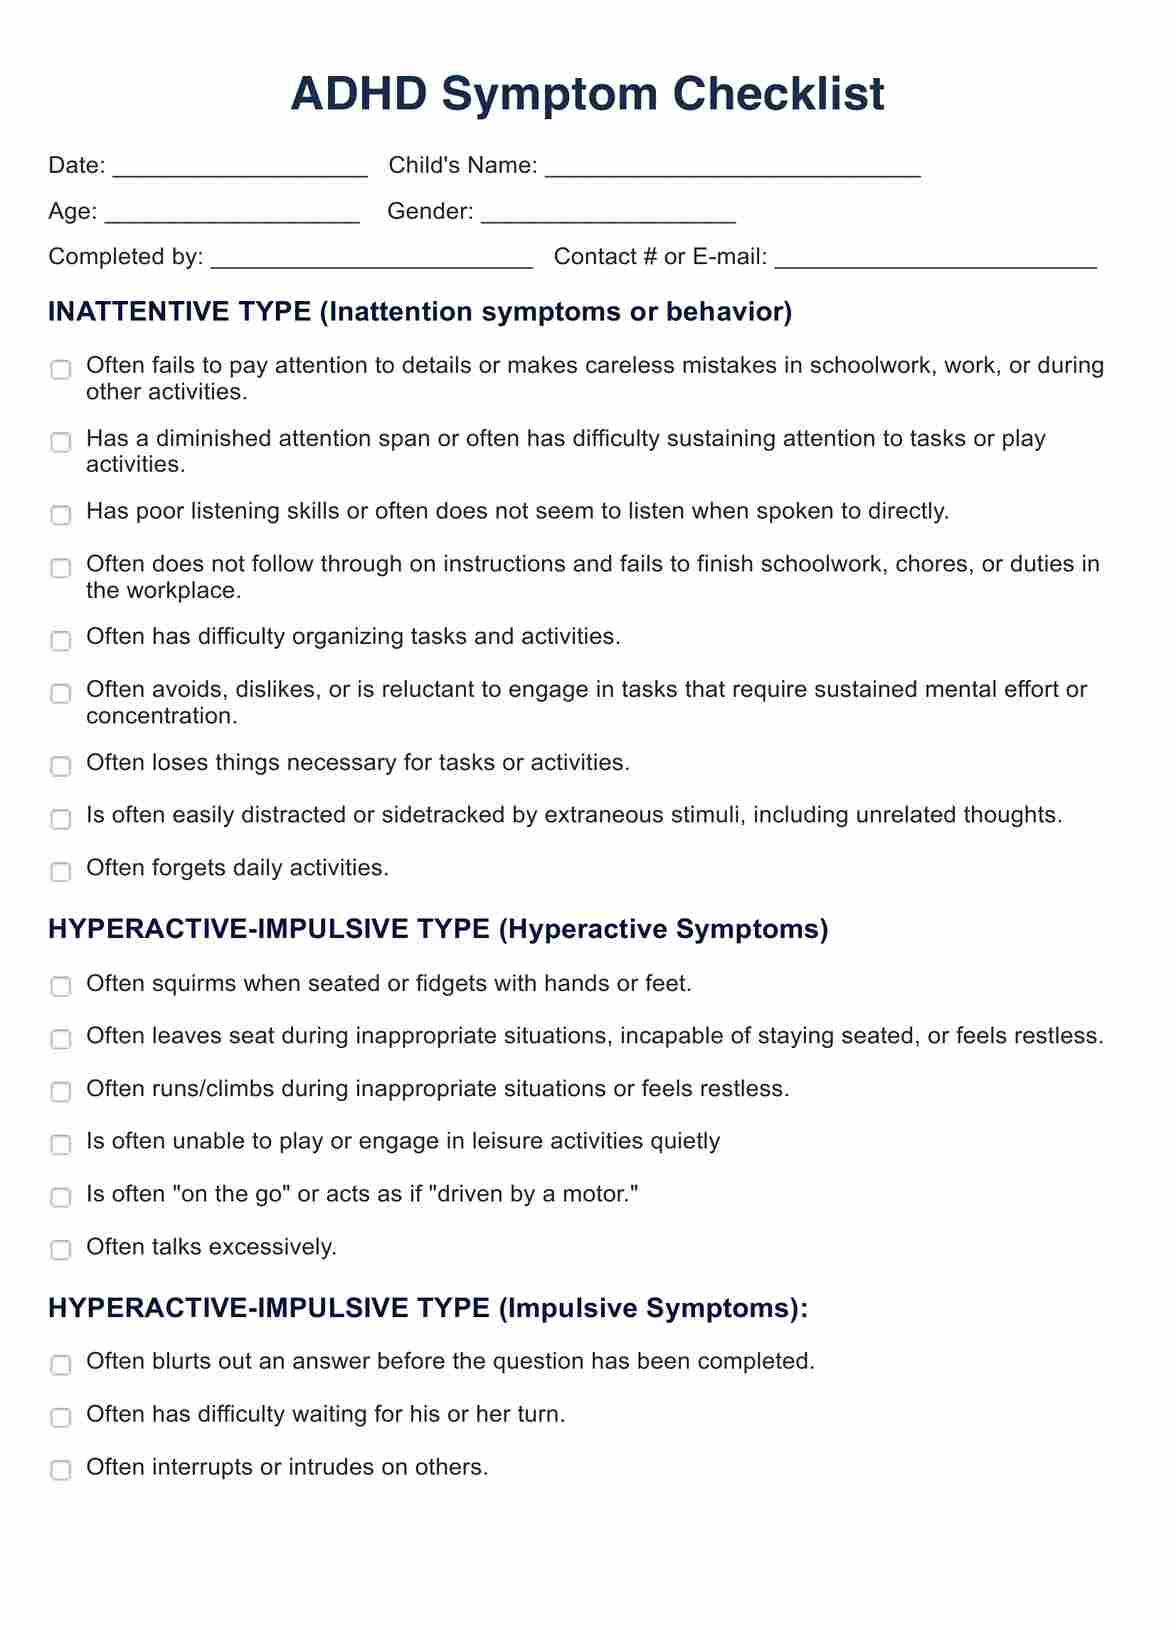 ADHD Symptom Checklist PDF Example